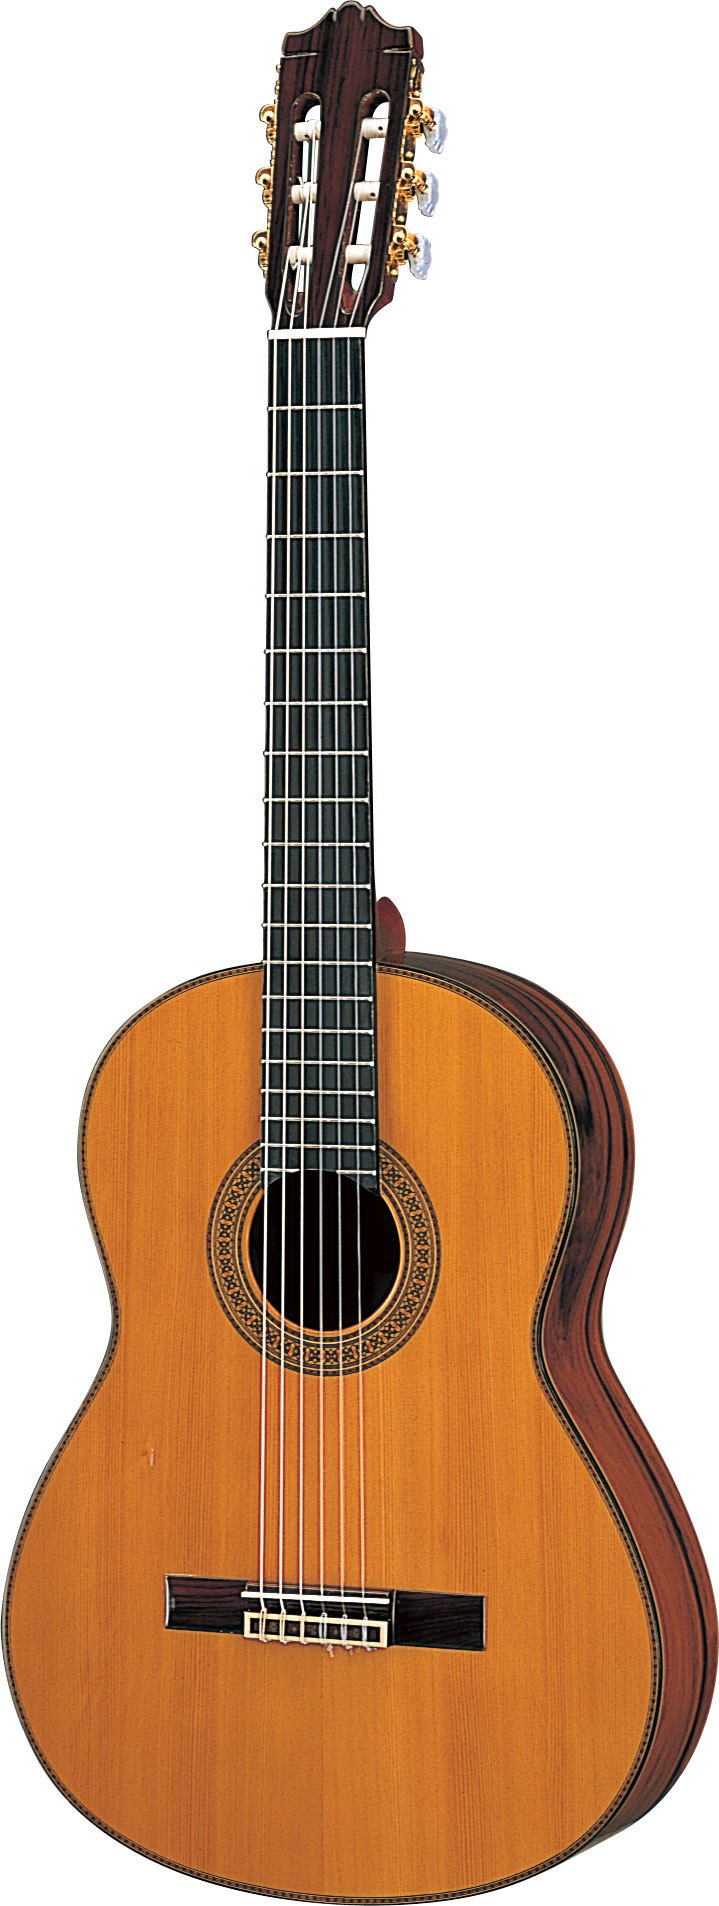 CG171C - クラシックギター・ナイロン弦ギター - 概要 - ヤマハ